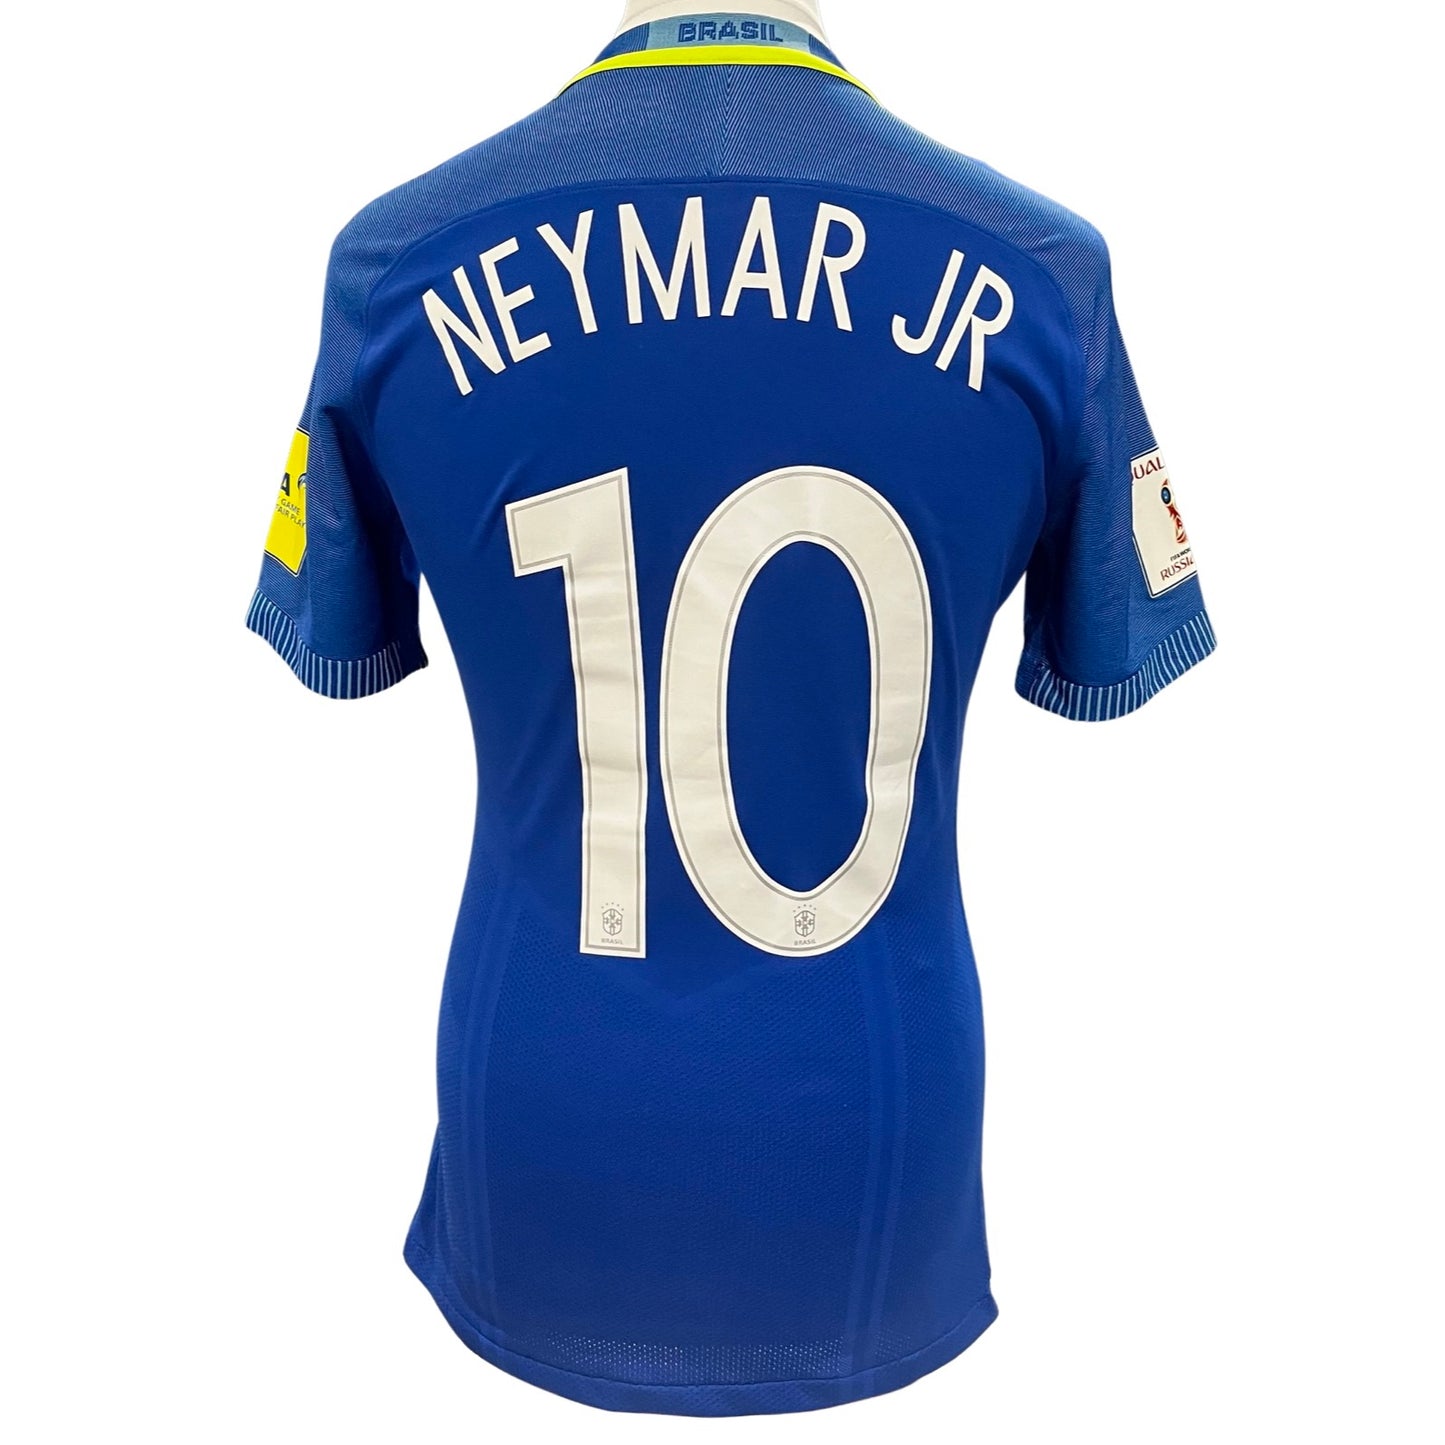 Neymar Jrマッチ着用ナイキDri-Fitシャツブラジルvsエクアドル2018 FIFAワールドカップ予選